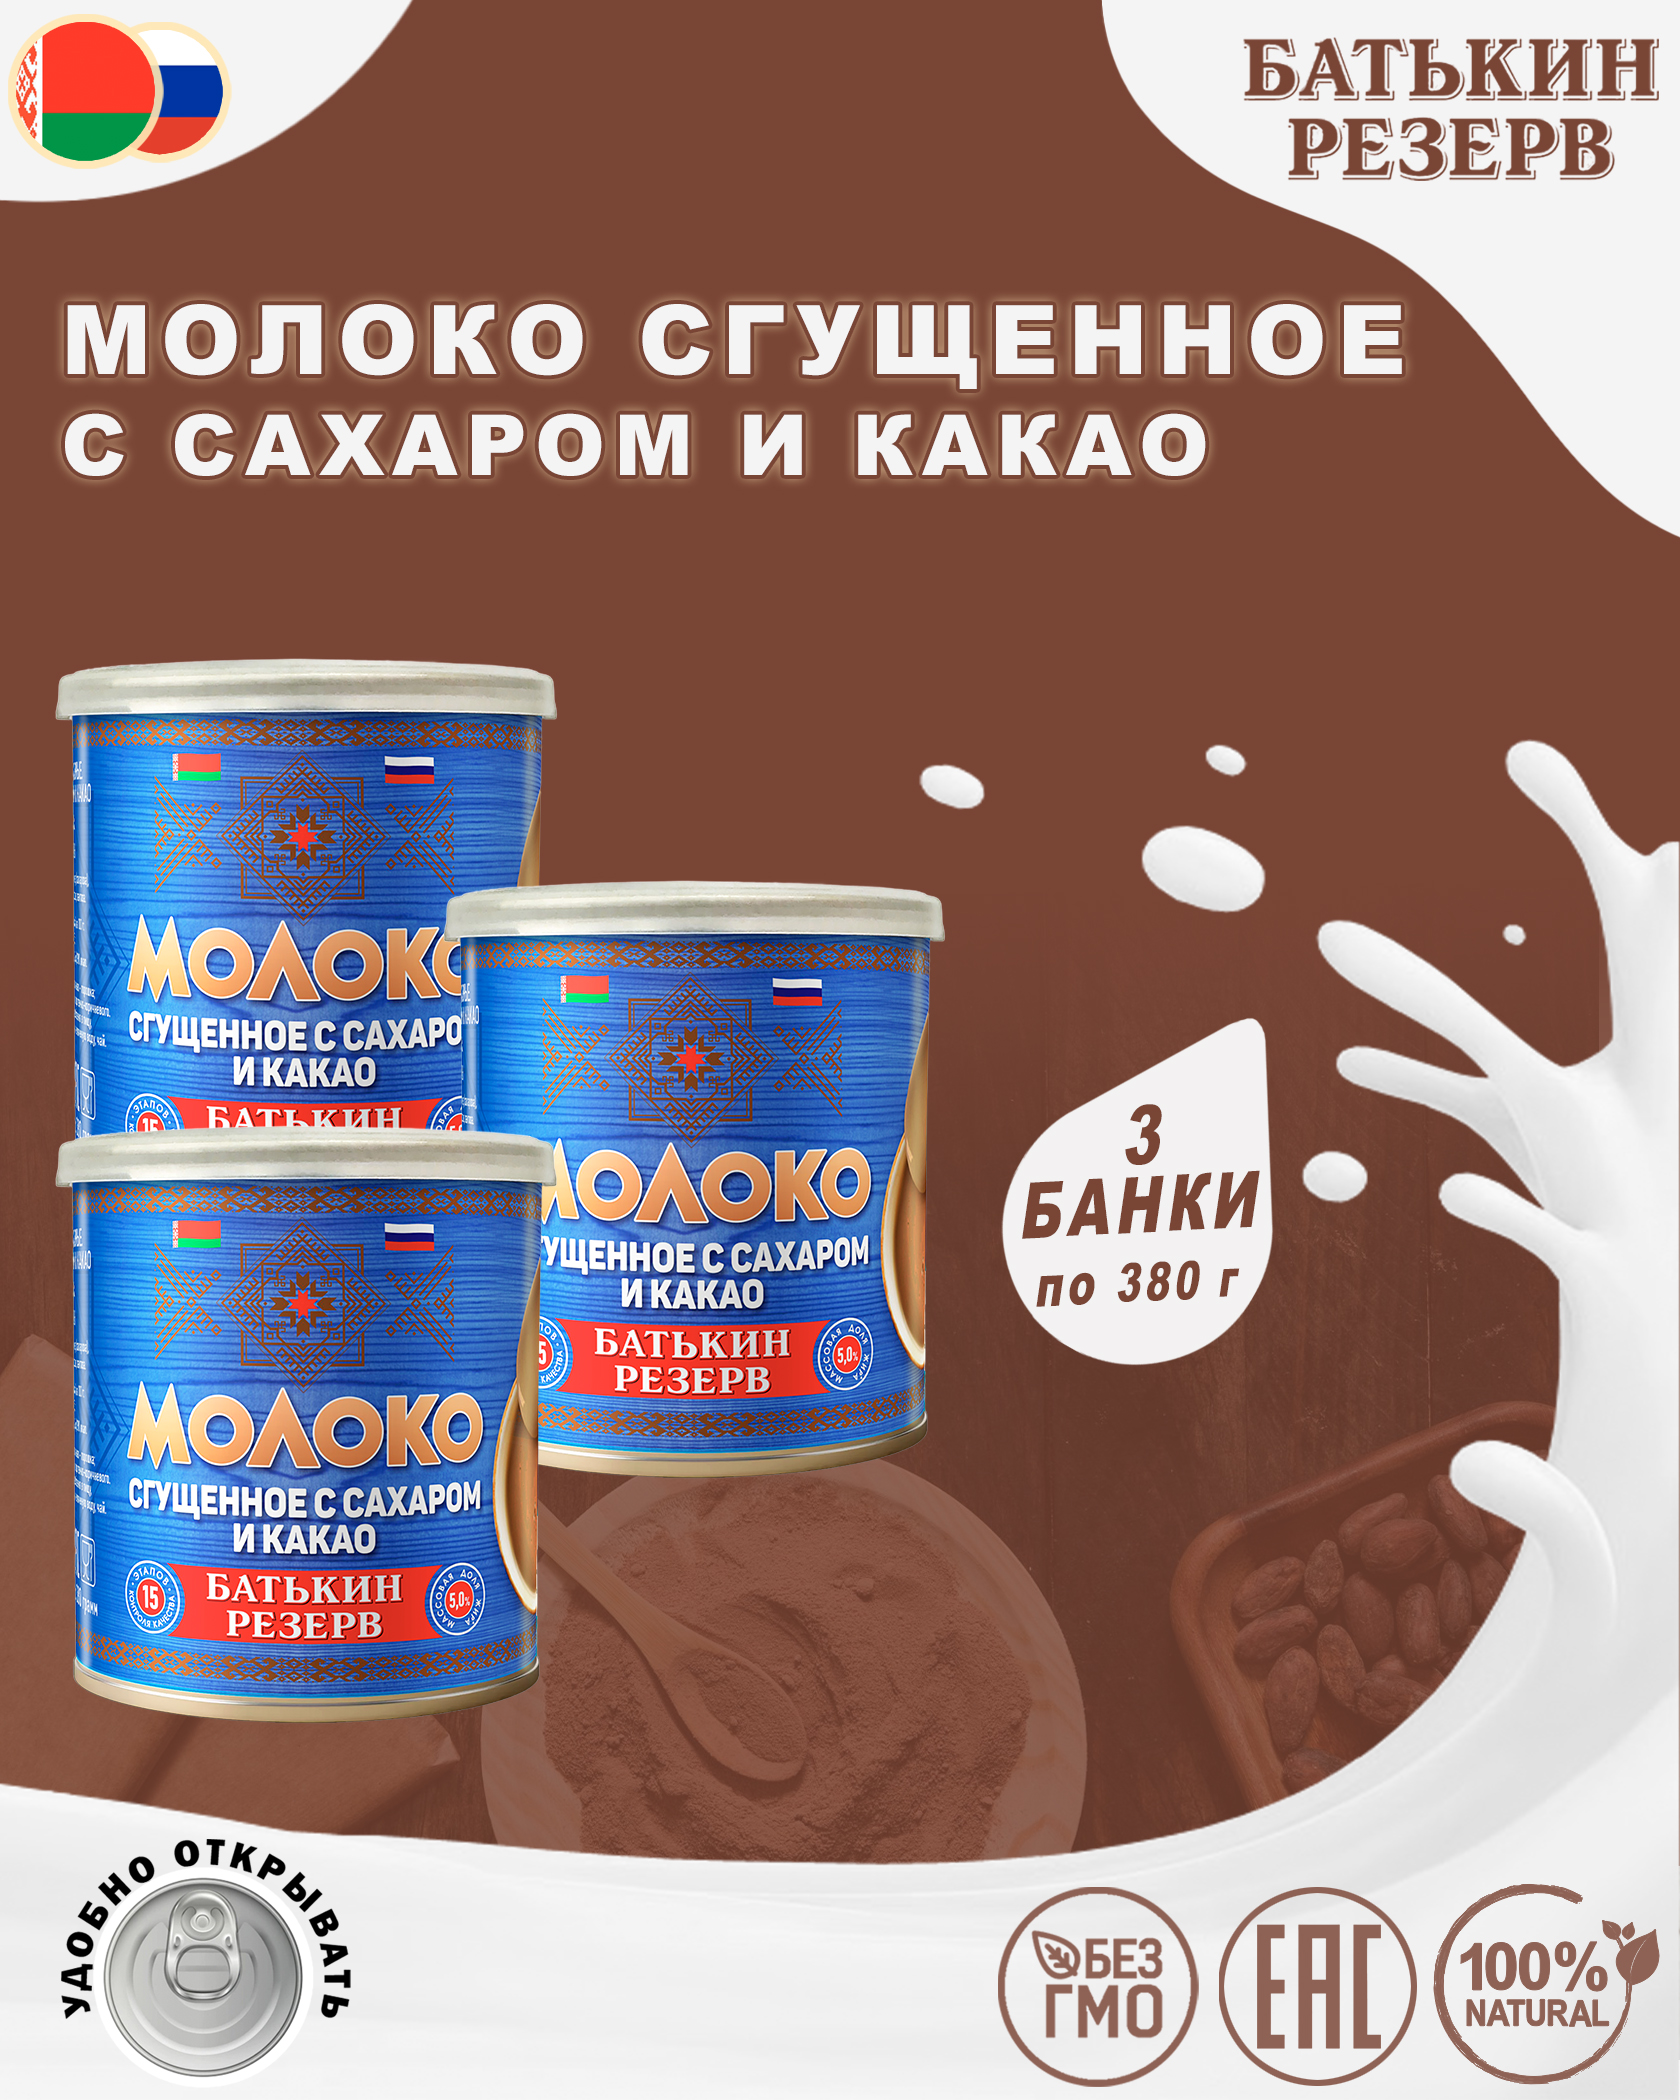 Молоко сгущенное с сахаром и какао, Батькин резерв, 3 шт. по 380 г